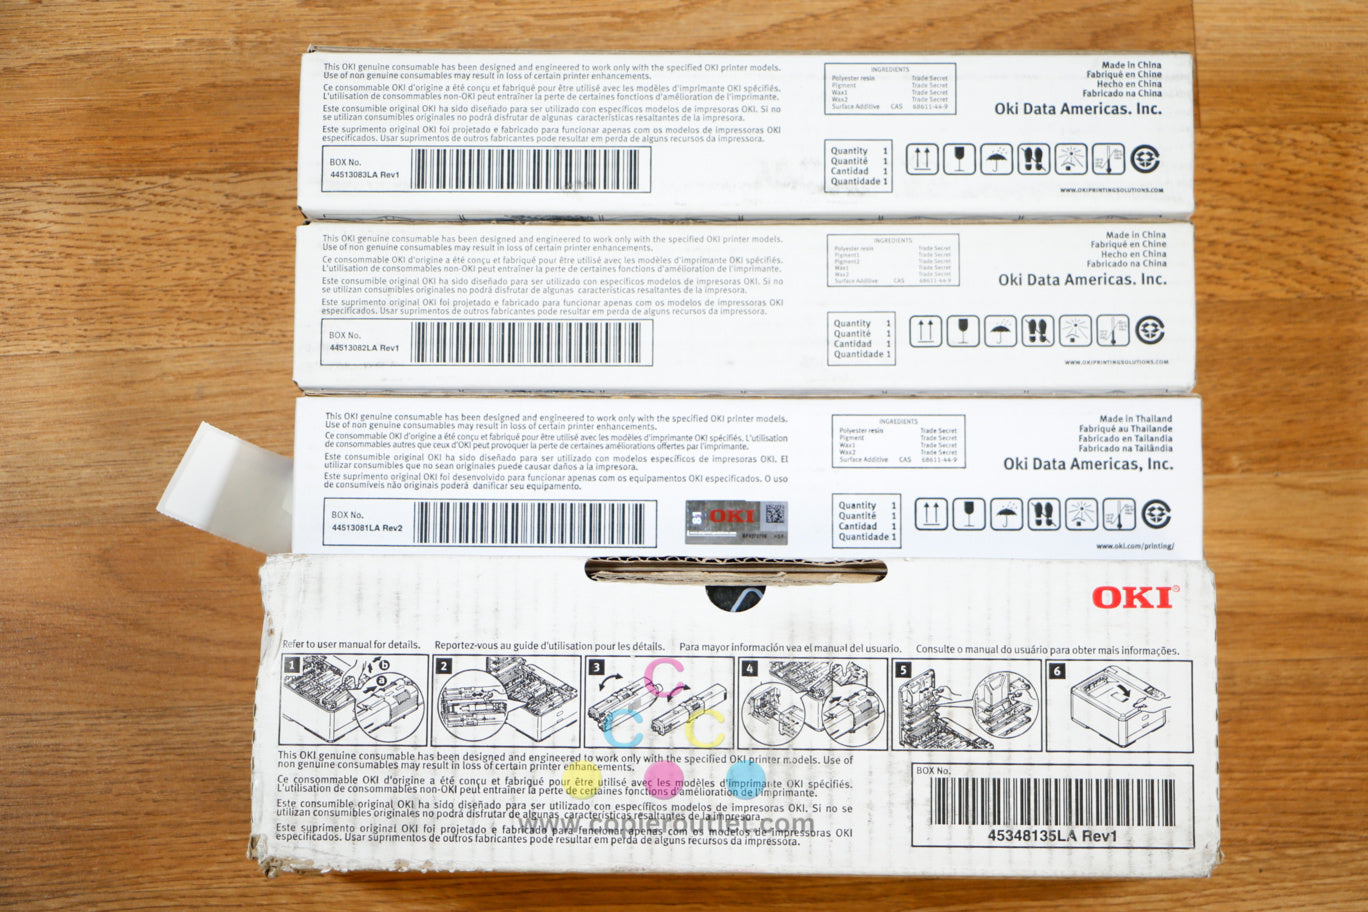 Genuine OKI CMYK Toner Cartridges Color MFPs Okidata MPS2731mc Same Day Shipping